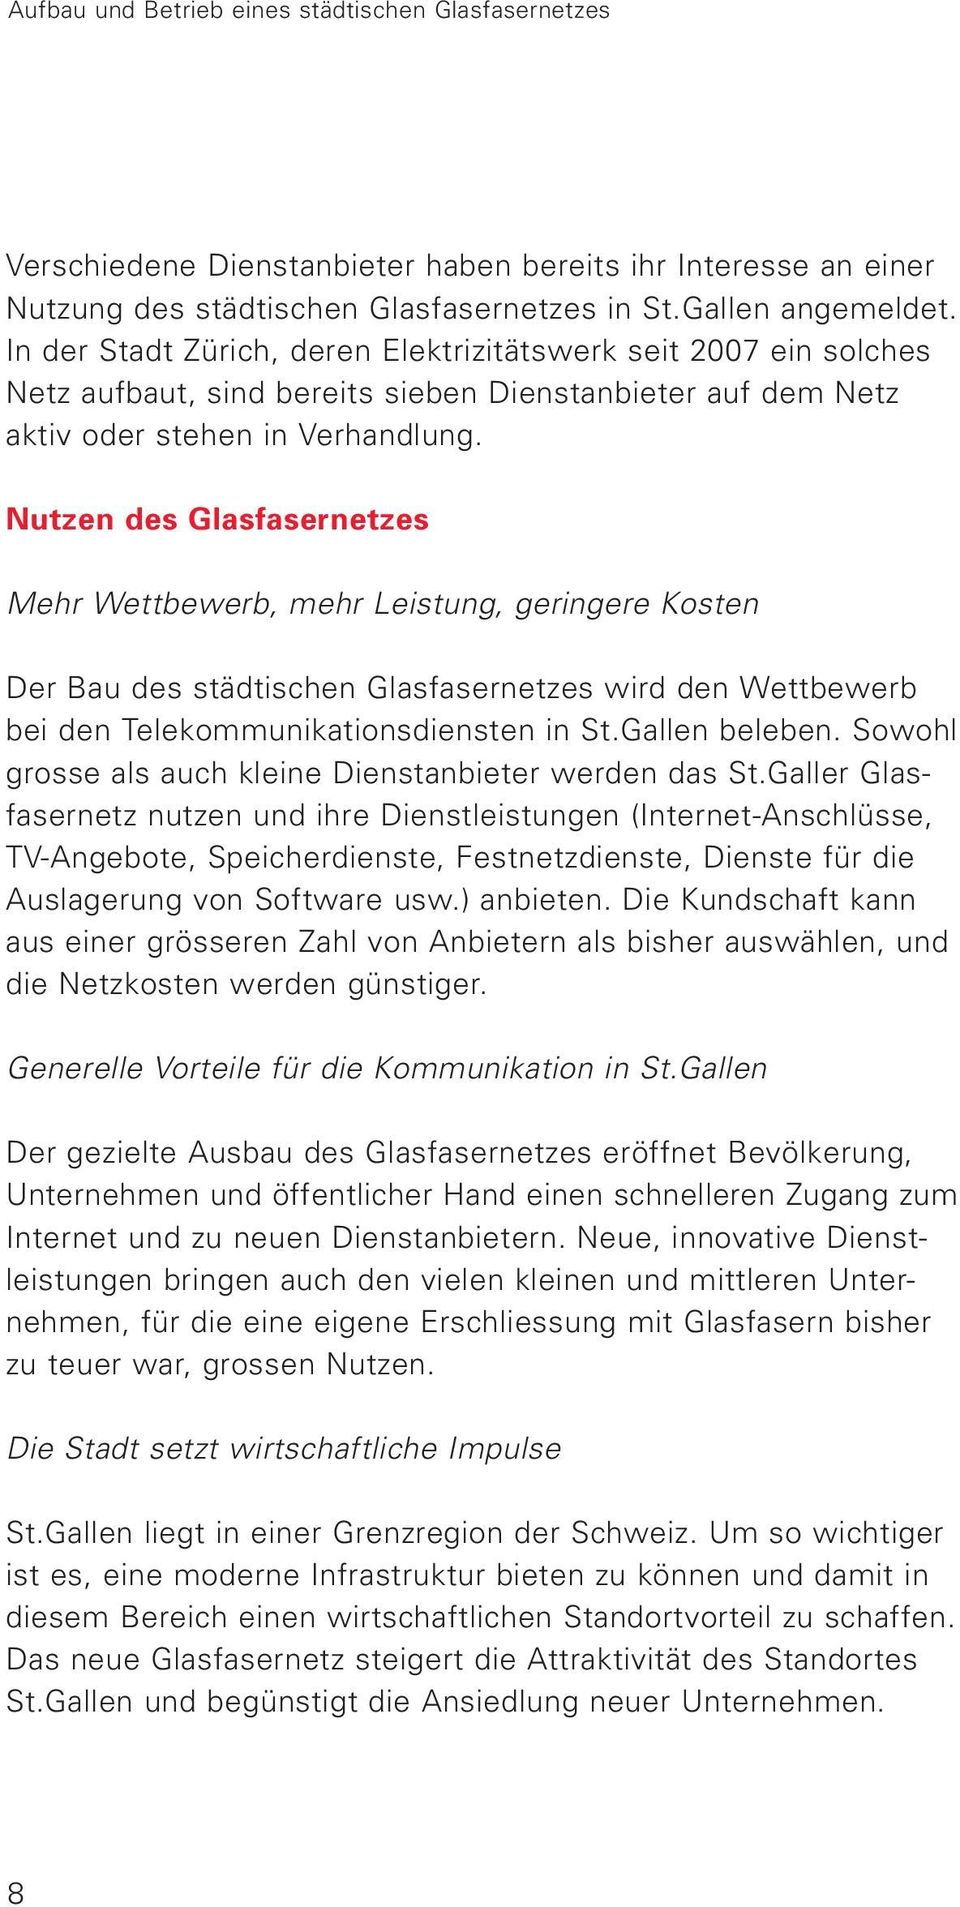 Nutzen des Glasfasernetzes Mehr Wettbewerb, mehr Leistung, geringere Kosten Der Bau des städtischen Glasfasernetzes wird den Wettbewerb bei den Telekommunikationsdiensten in St.Gallen beleben.